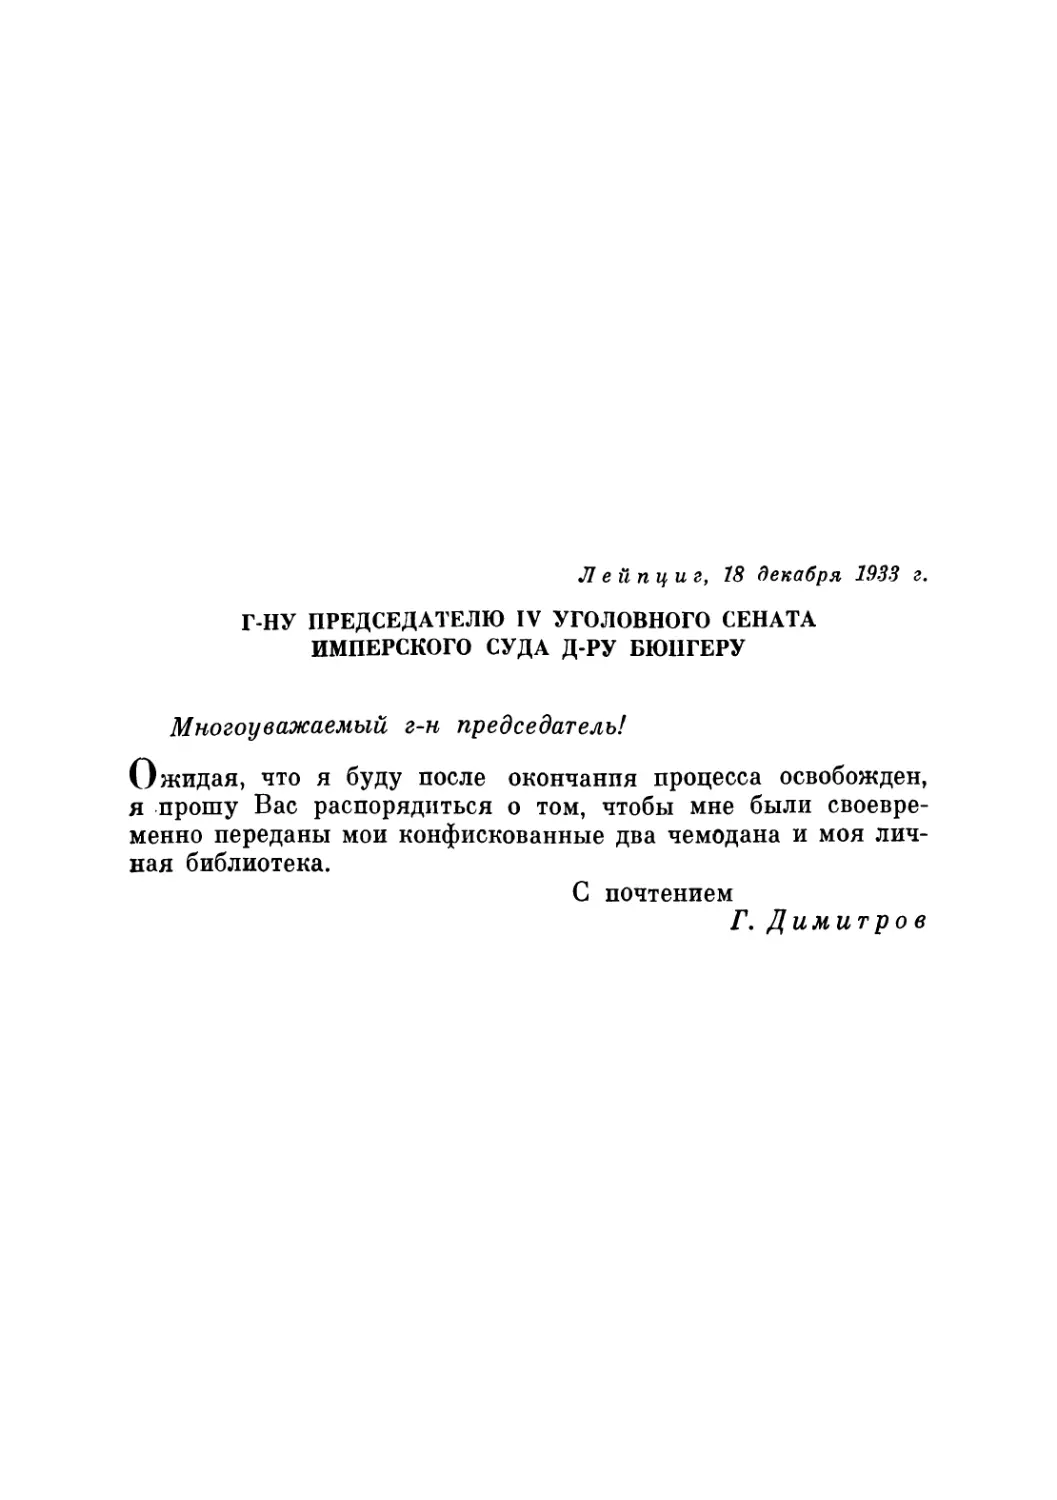 Г-НУ ПРЕДСЕДАТЕЛЮ IV УГОЛОВНОГО СЕНАТА ИМПЕРСКОГО СУДА Д-РУ БЮНГЕРУ. 18 декабря 1933 г.